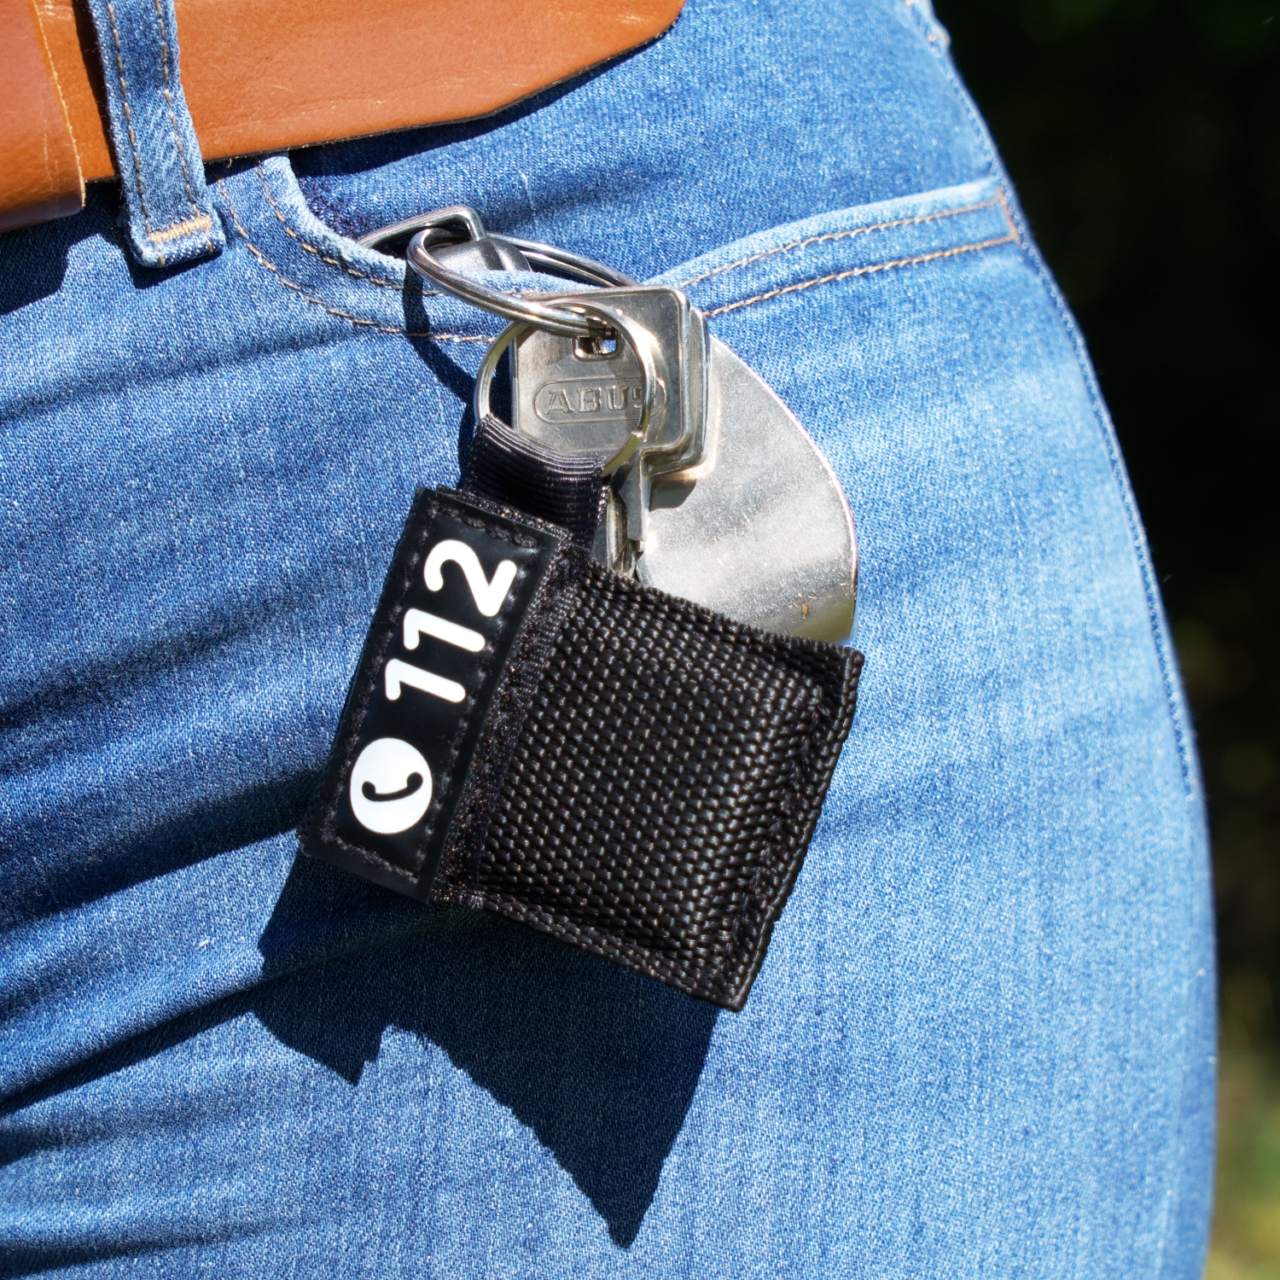 Beatmungstuch im Schlüsselanhänger Polas24 Polizeiausrüstung